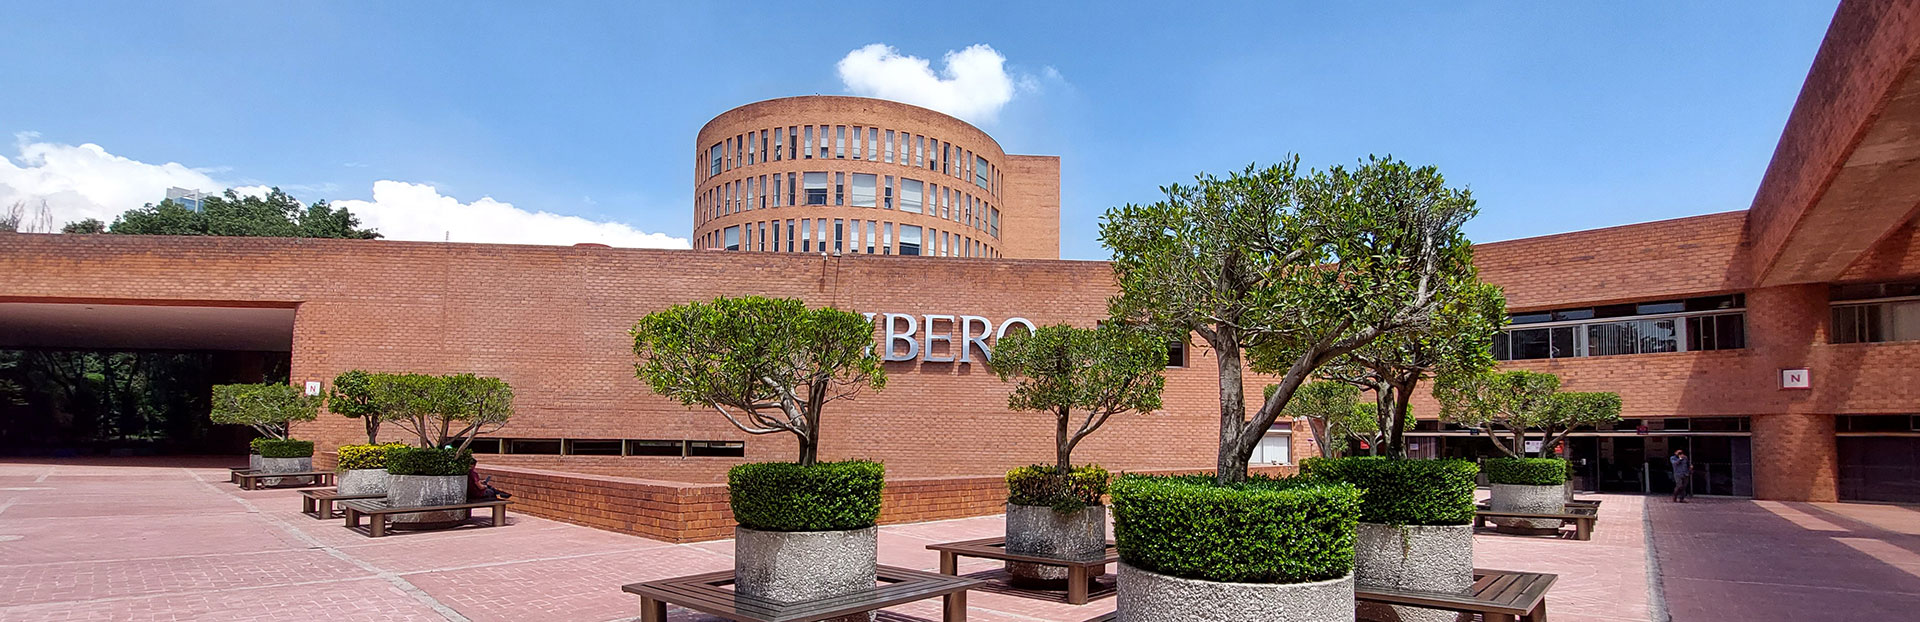 L’Università IBEROamericana: per una società messicana più giusta